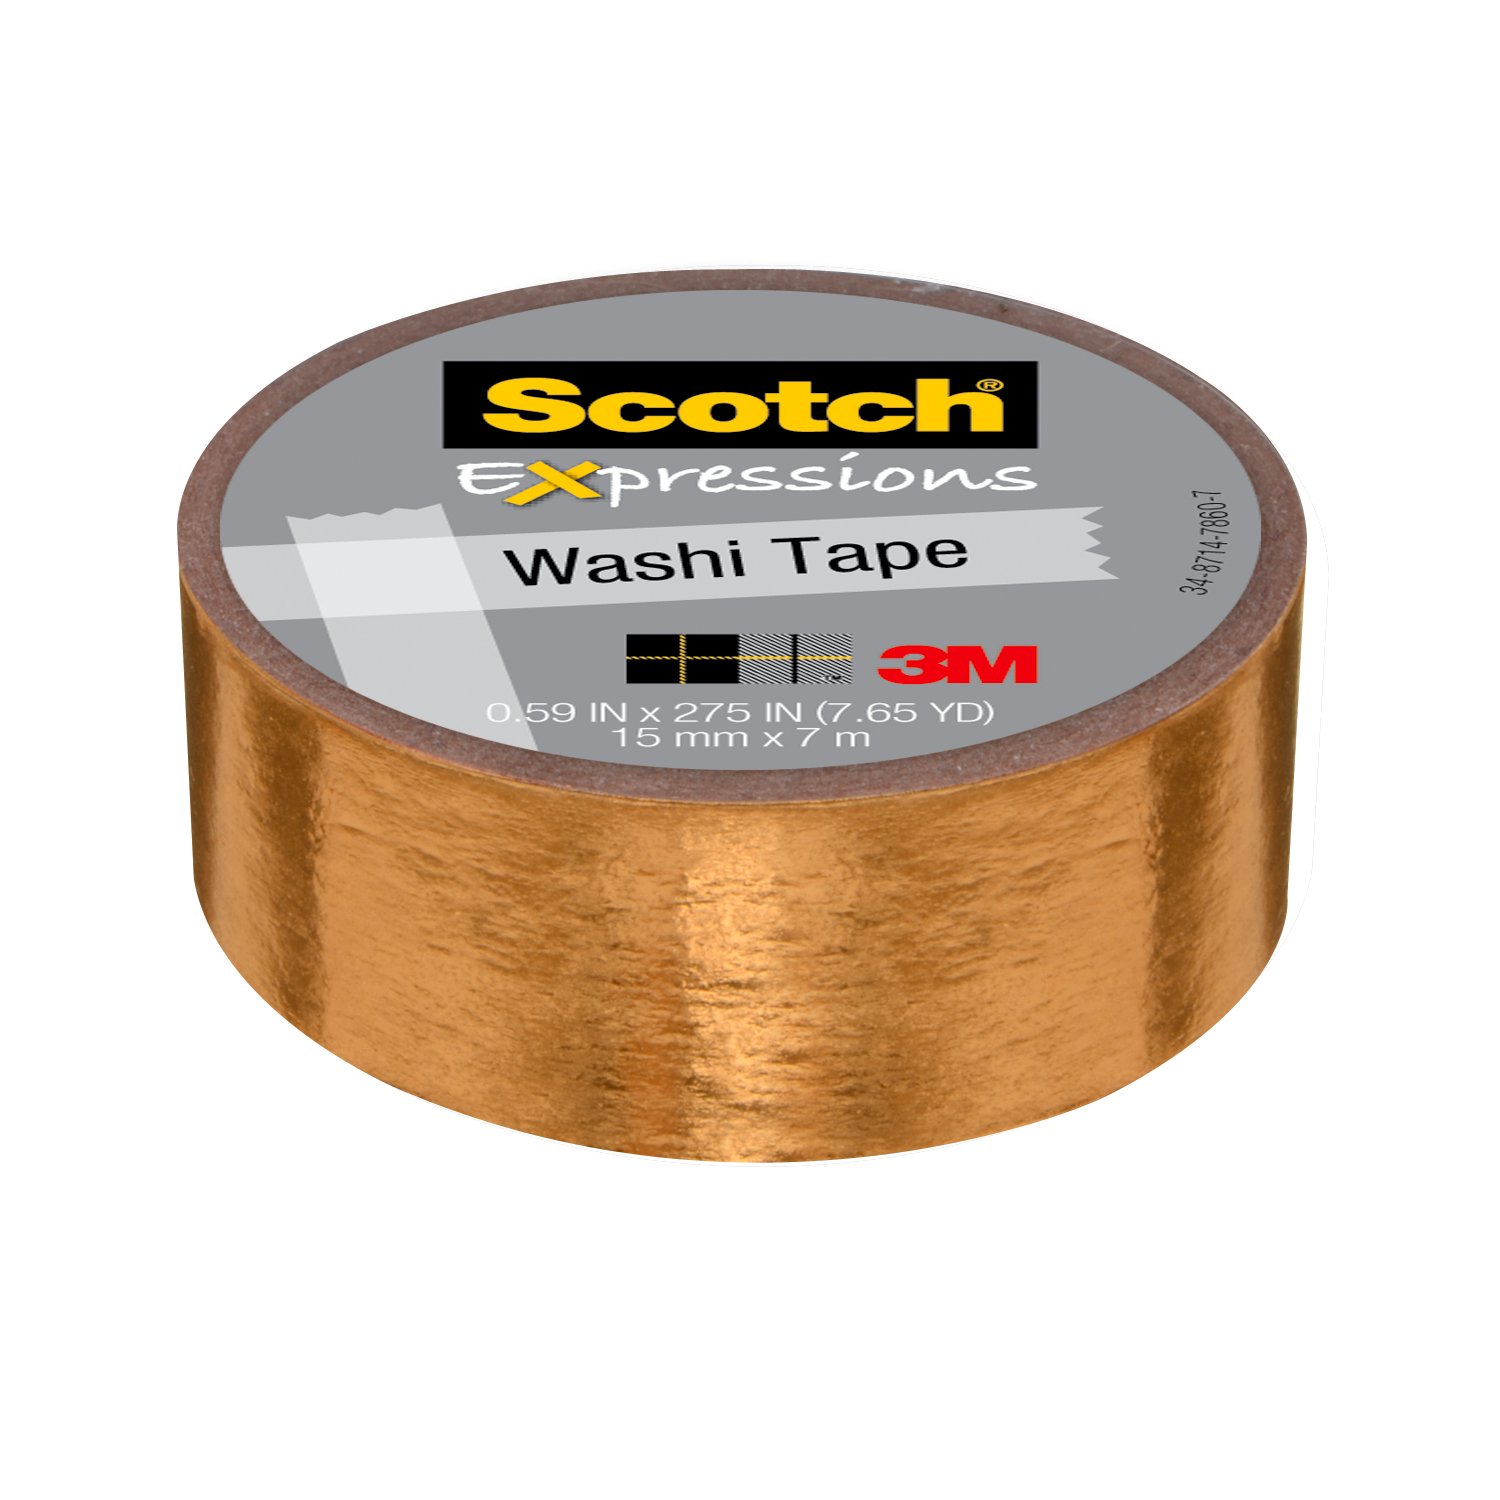 7100096961 - Scotch Expressions Washi Tape C614-GLD, .59 in x 275 in (15 mm x 7 m)
Gold Foil